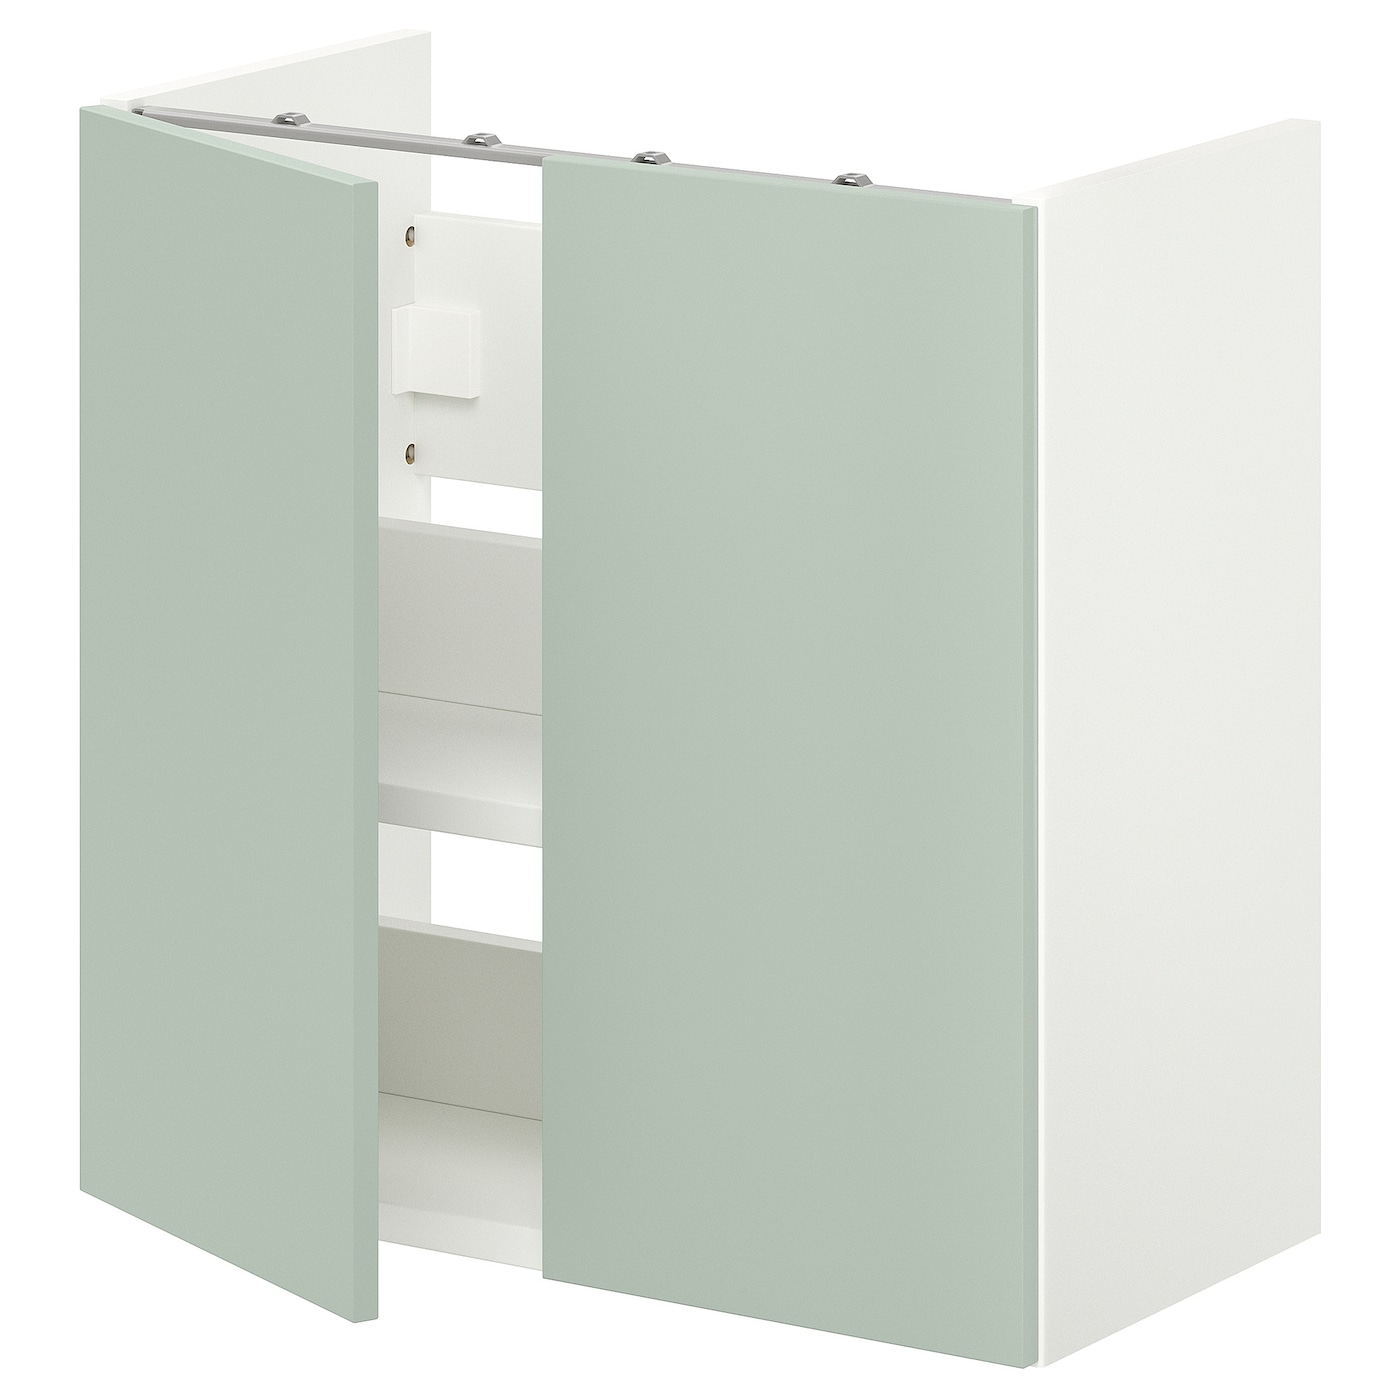 Умывальник с половинкой/дверью - ENHET IKEA/ЭНХЕТ ИКЕА, 60х60 см, белый/зеленый